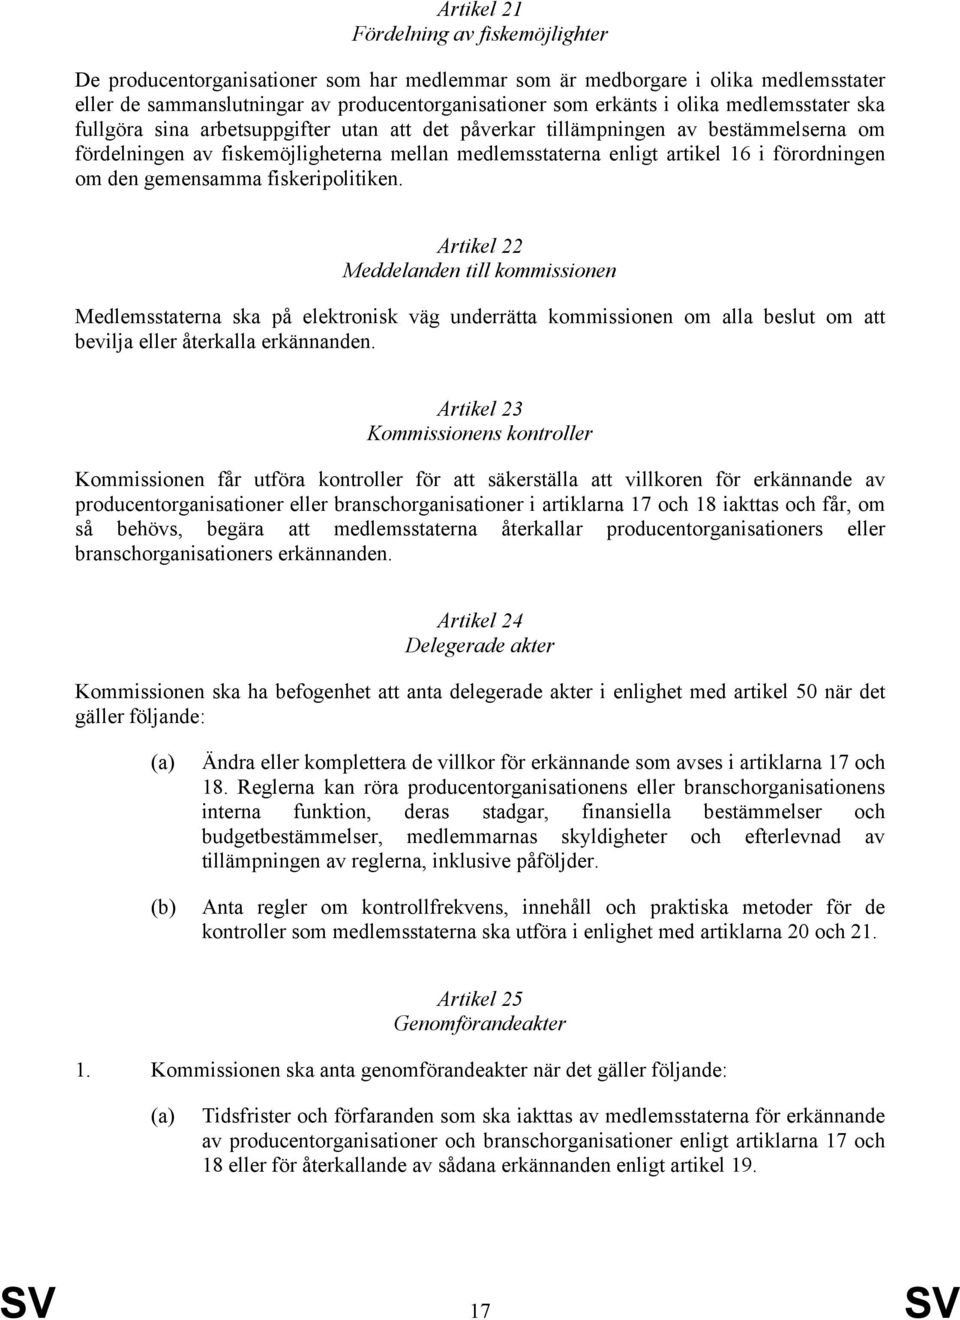 den gemensamma fiskeripolitiken. Artikel 22 Meddelanden till kommissionen Medlemsstaterna ska på elektronisk väg underrätta kommissionen om alla beslut om att bevilja eller återkalla erkännanden.